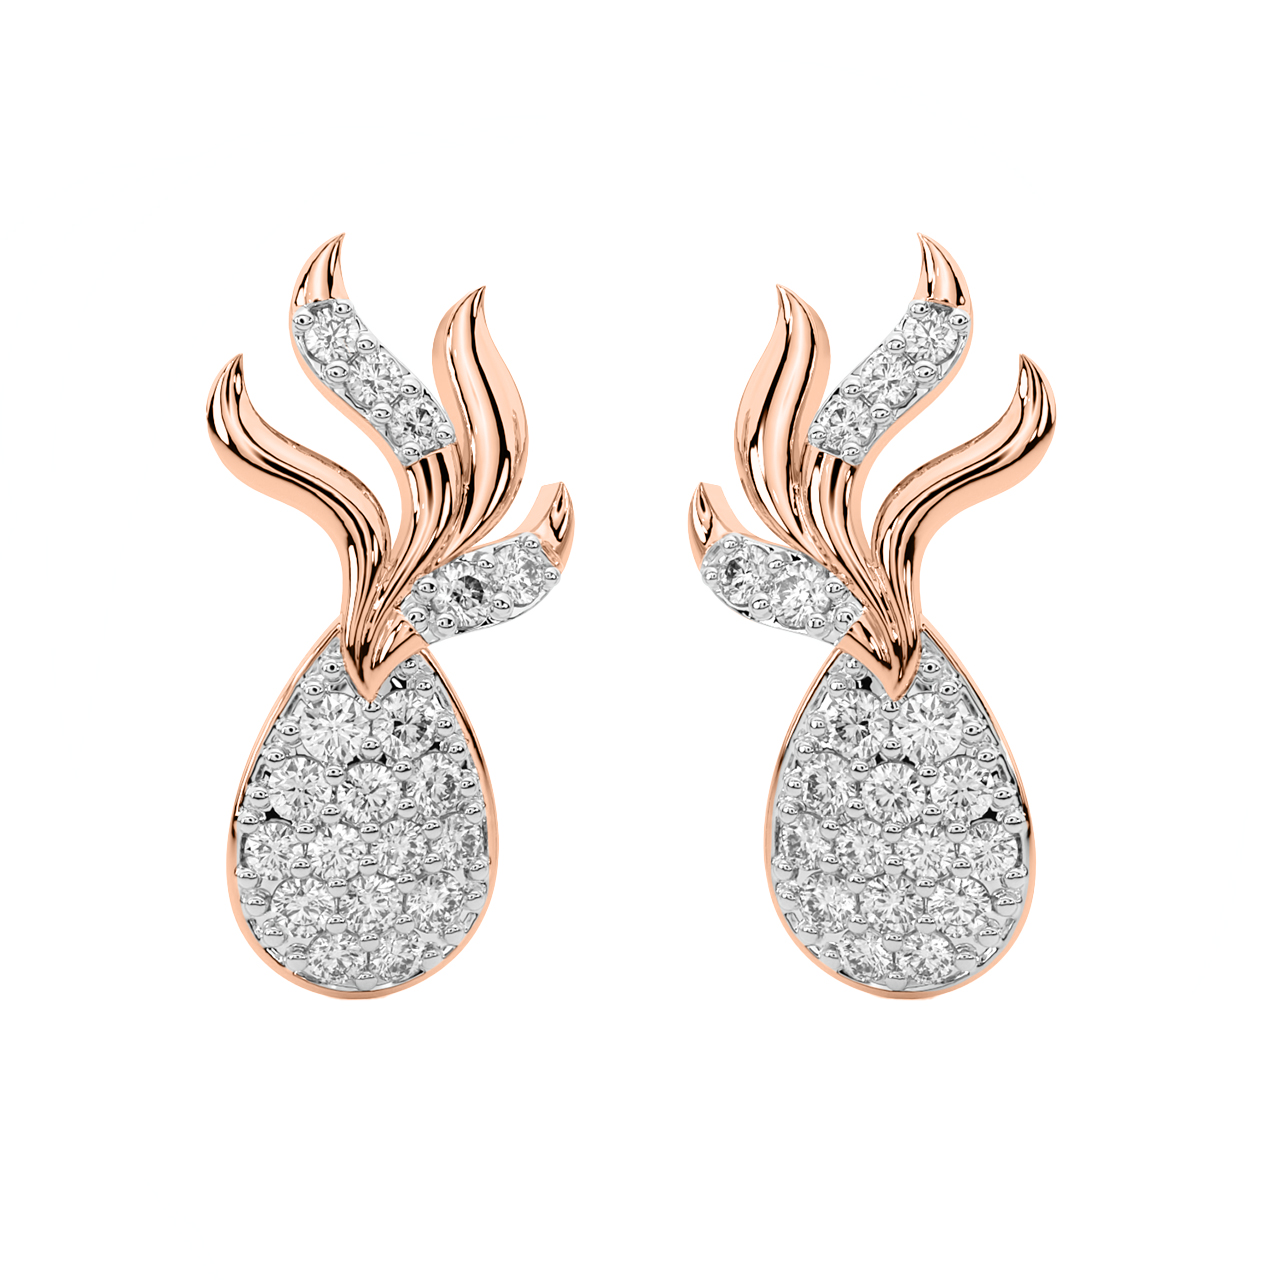 Zindel Round Diamond Stud Earrings